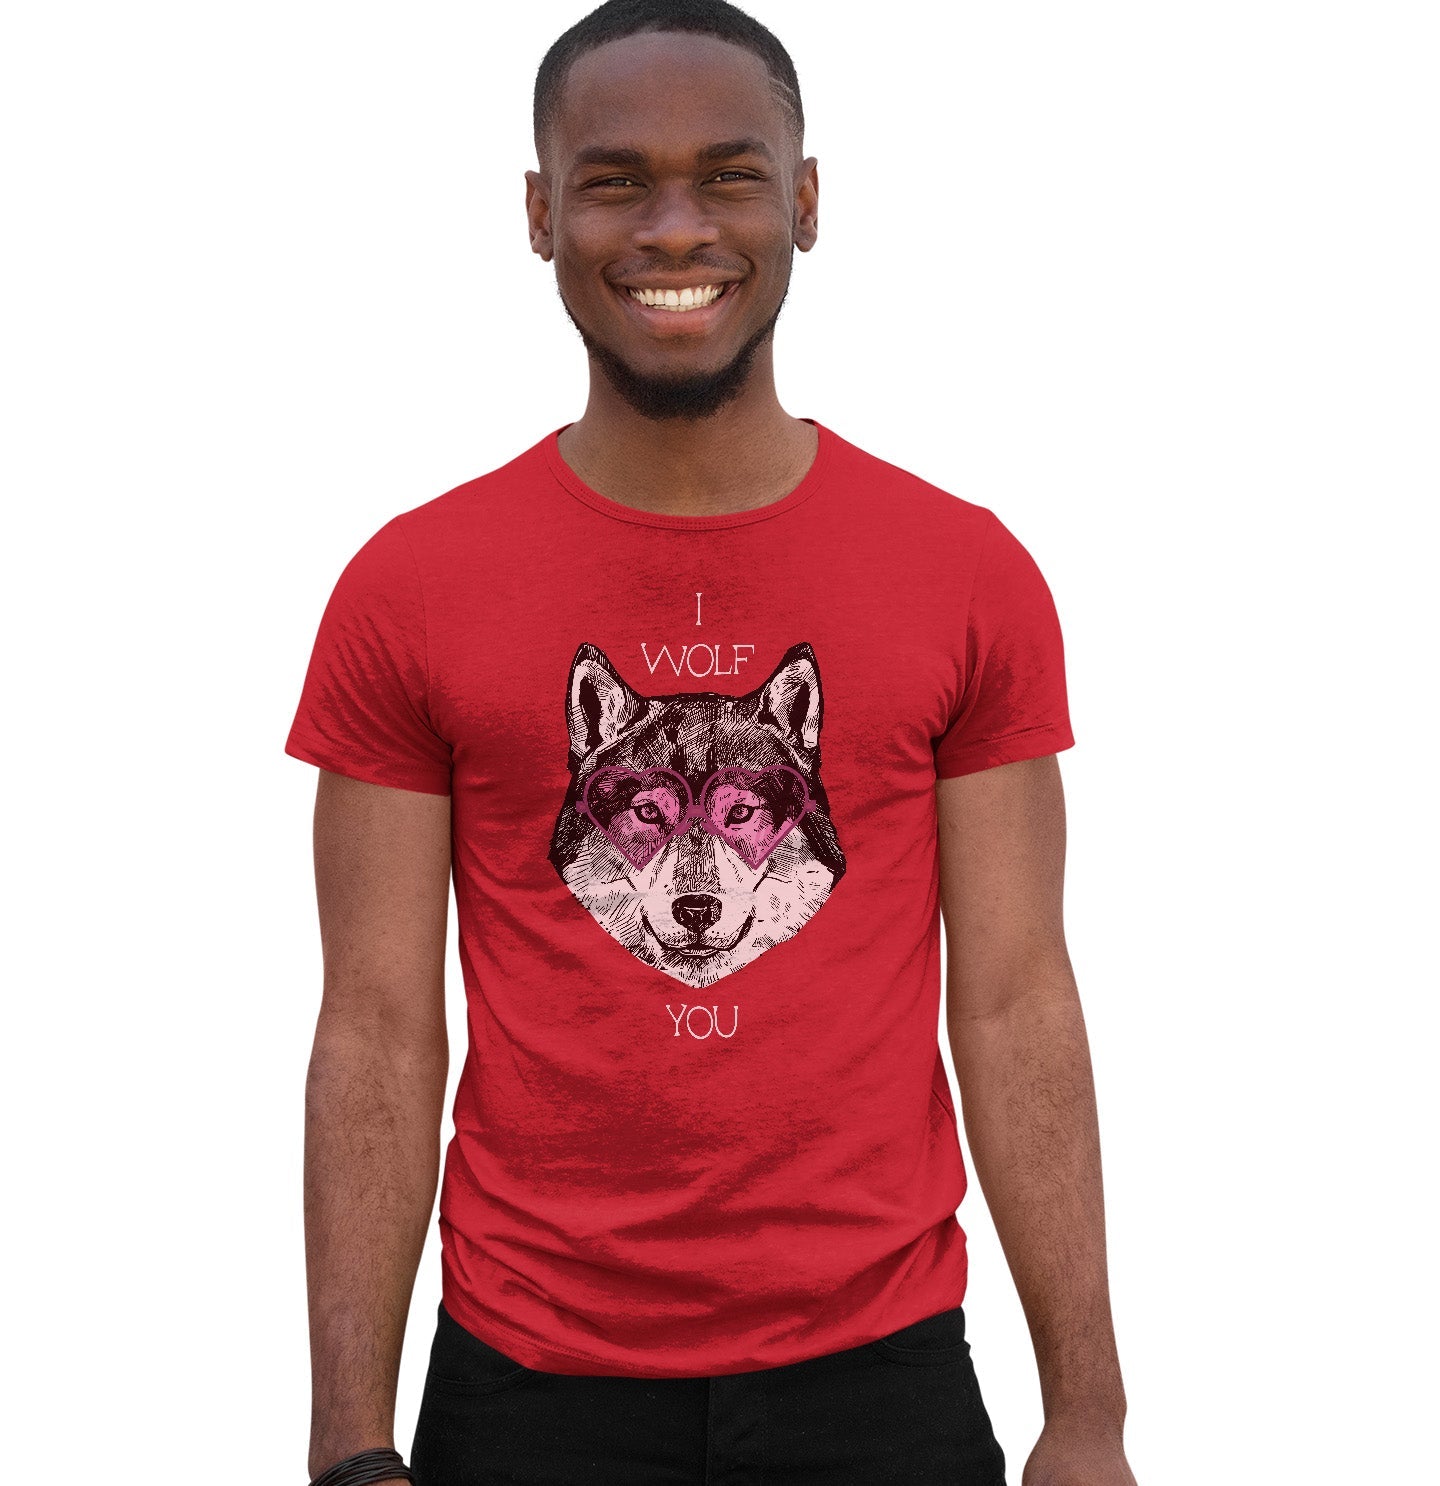 Animal Pride - I Wolf You - Adult Unisex T-Shirt